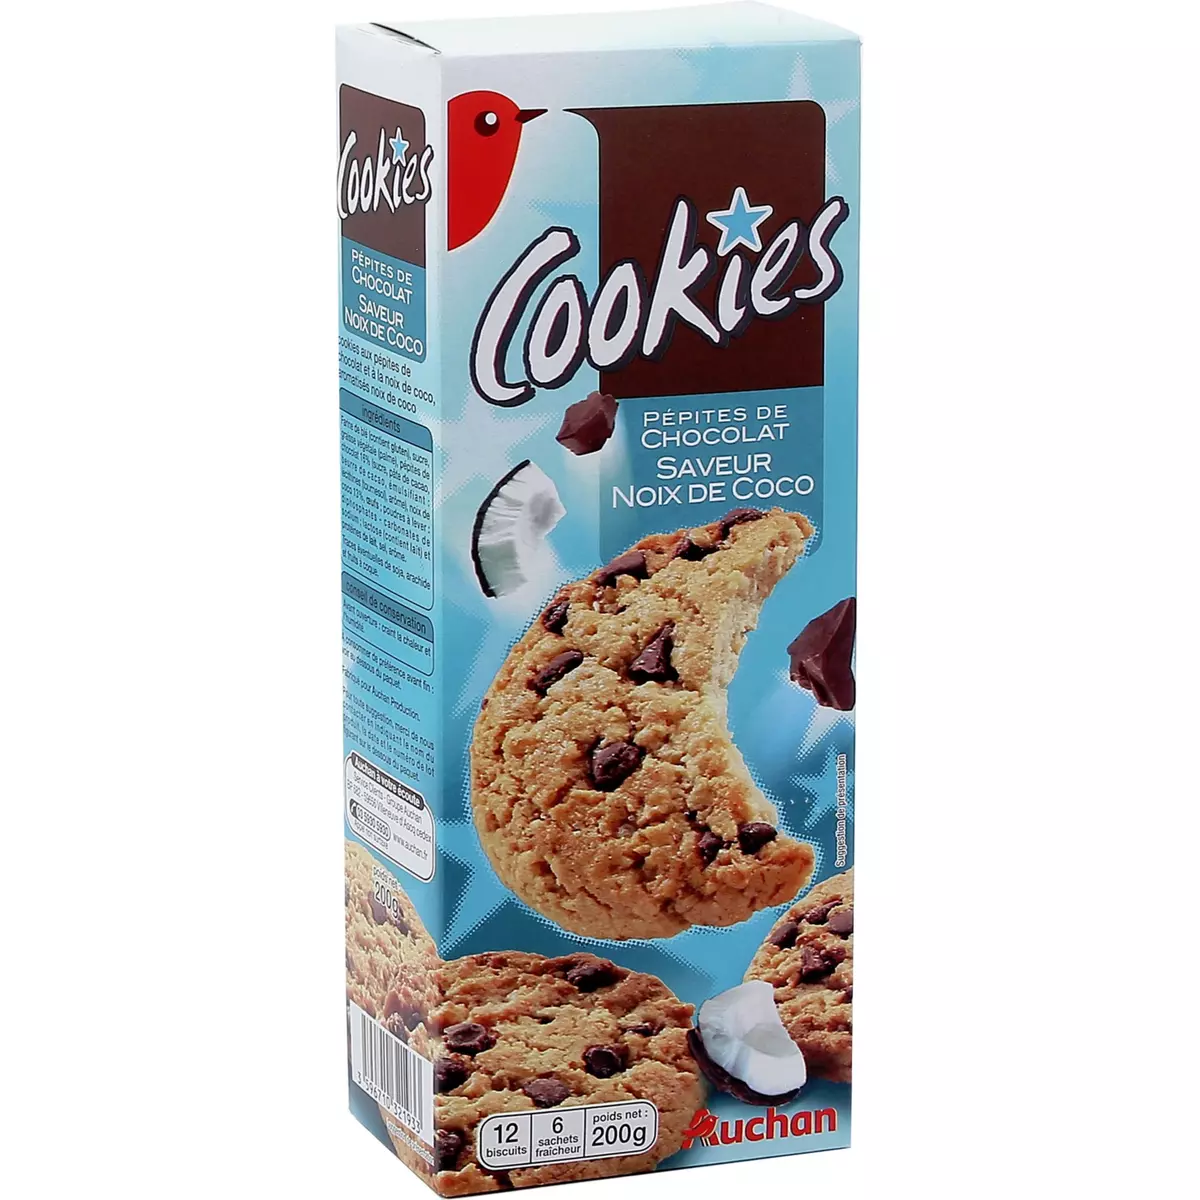 AUCHAN Cookies aux pépites de chocolat saveur noix de coco, sachets fraîcheur 6x2 biscuits 200g